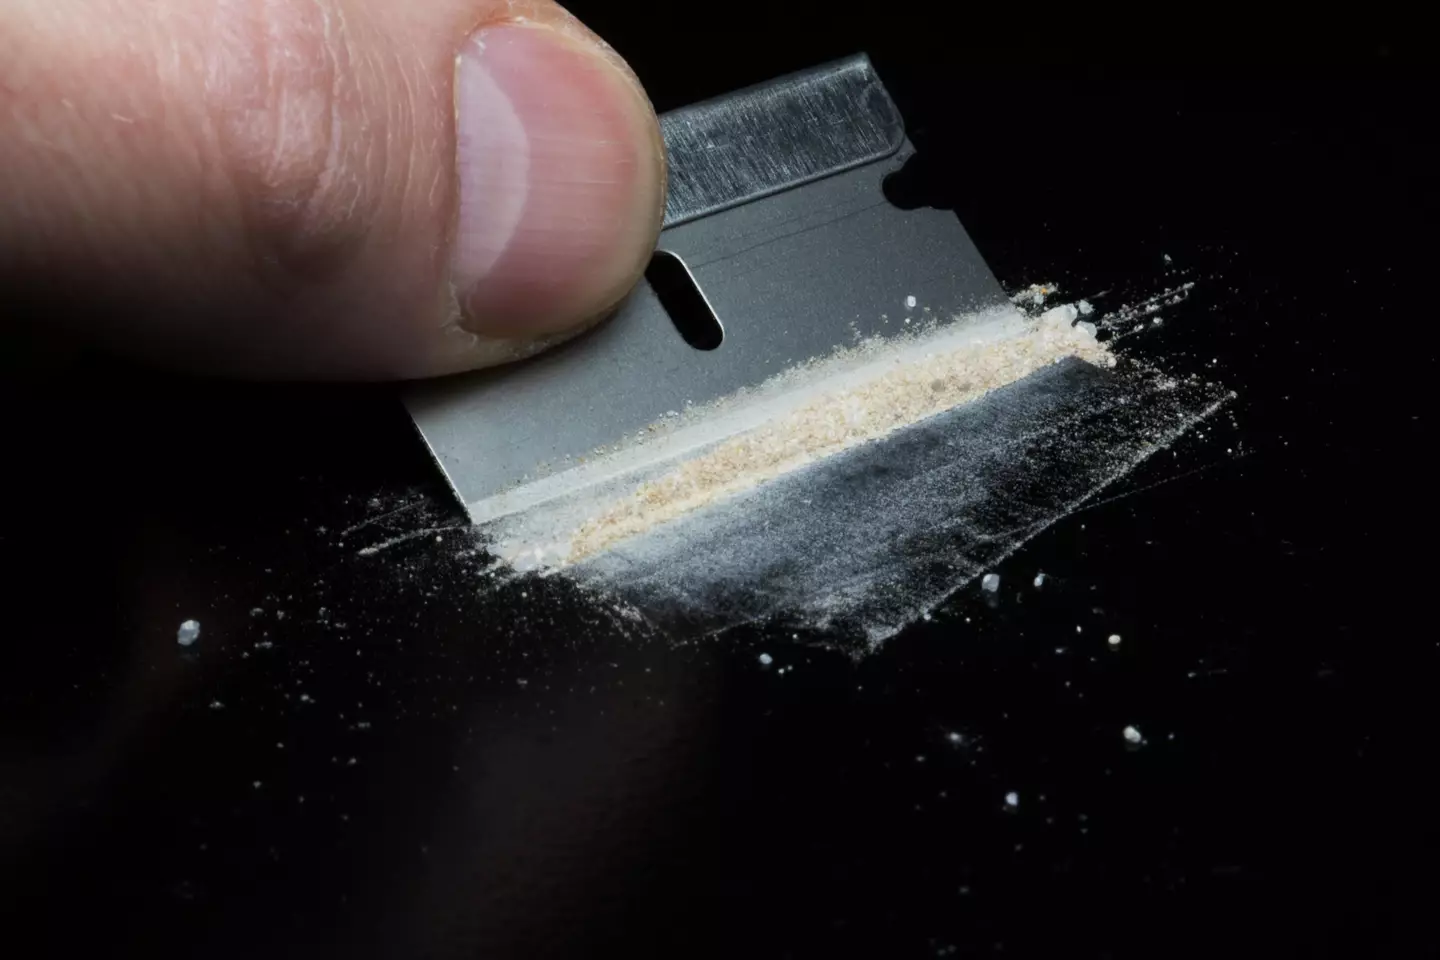 Police in Florida seized enough fentanyl to kill Estonia’s entire population.